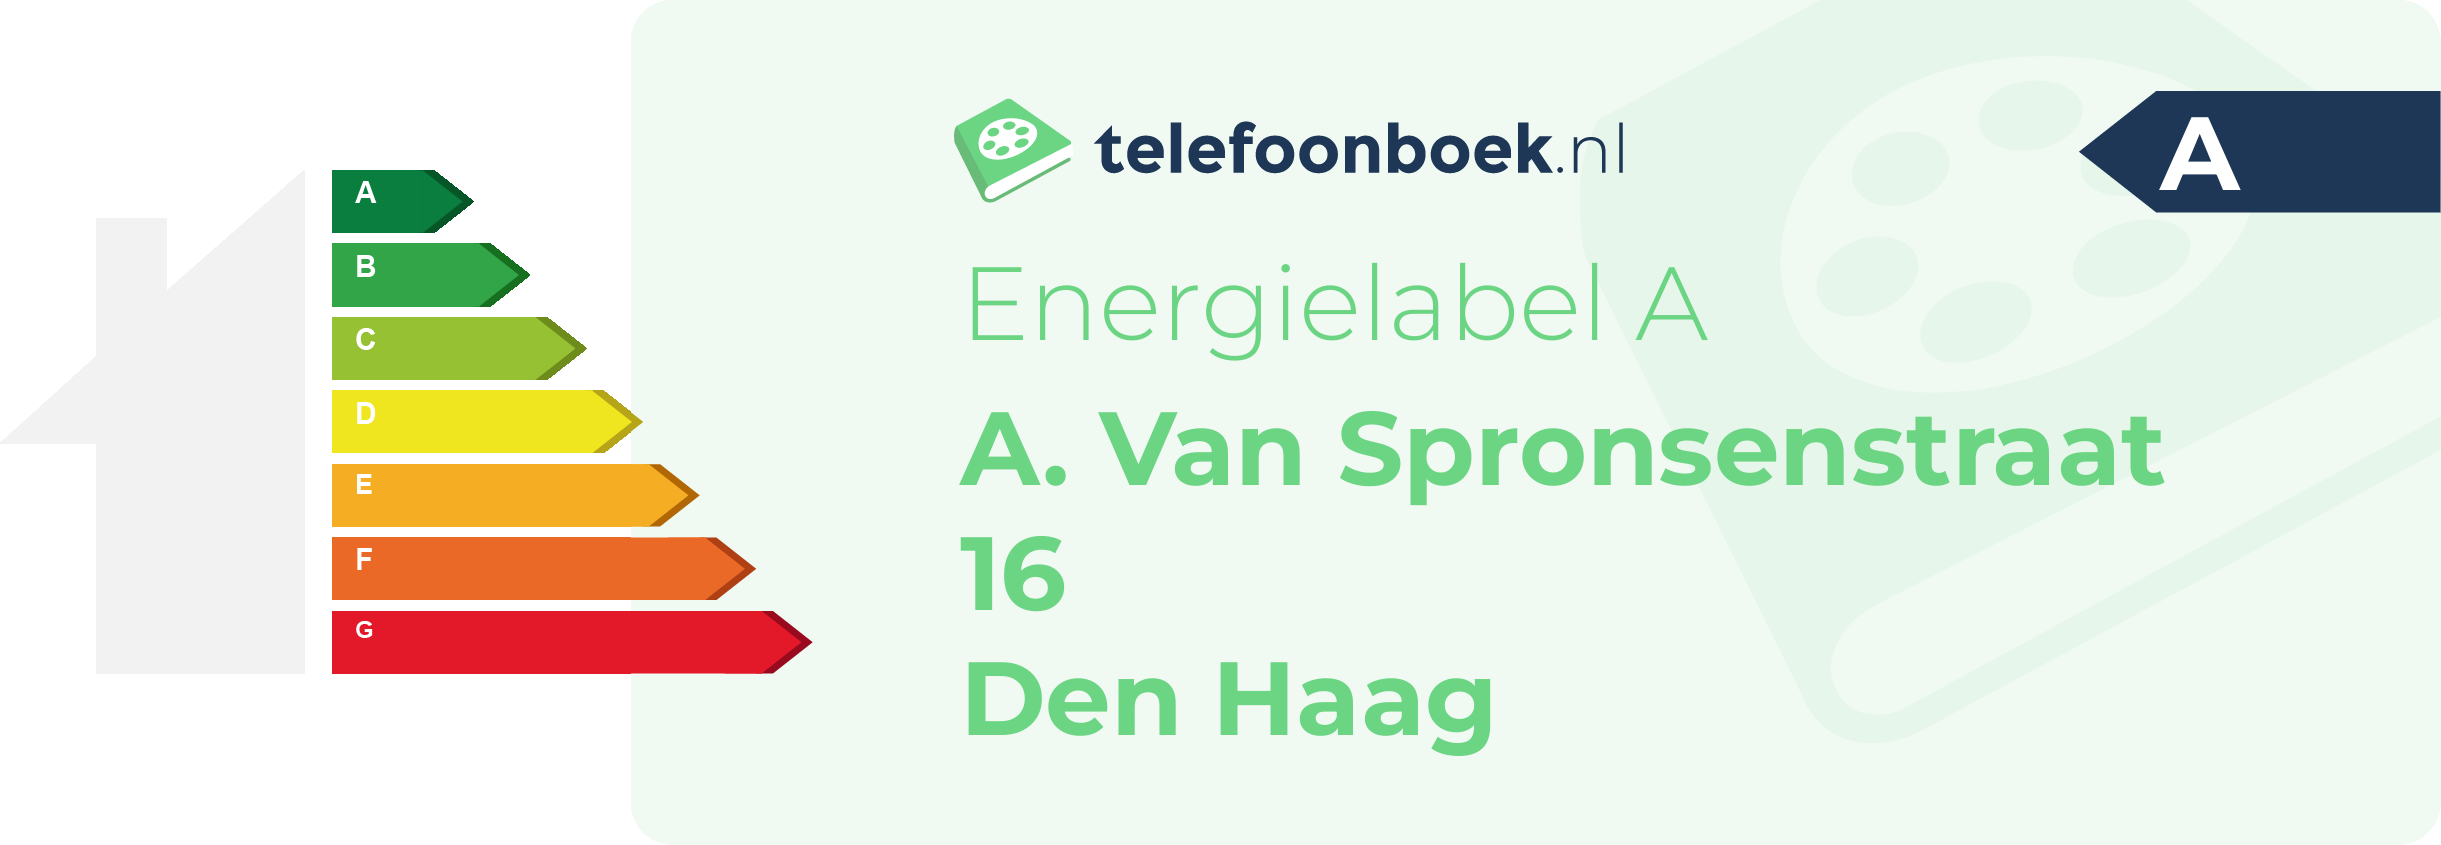 Energielabel A. Van Spronsenstraat 16 Den Haag